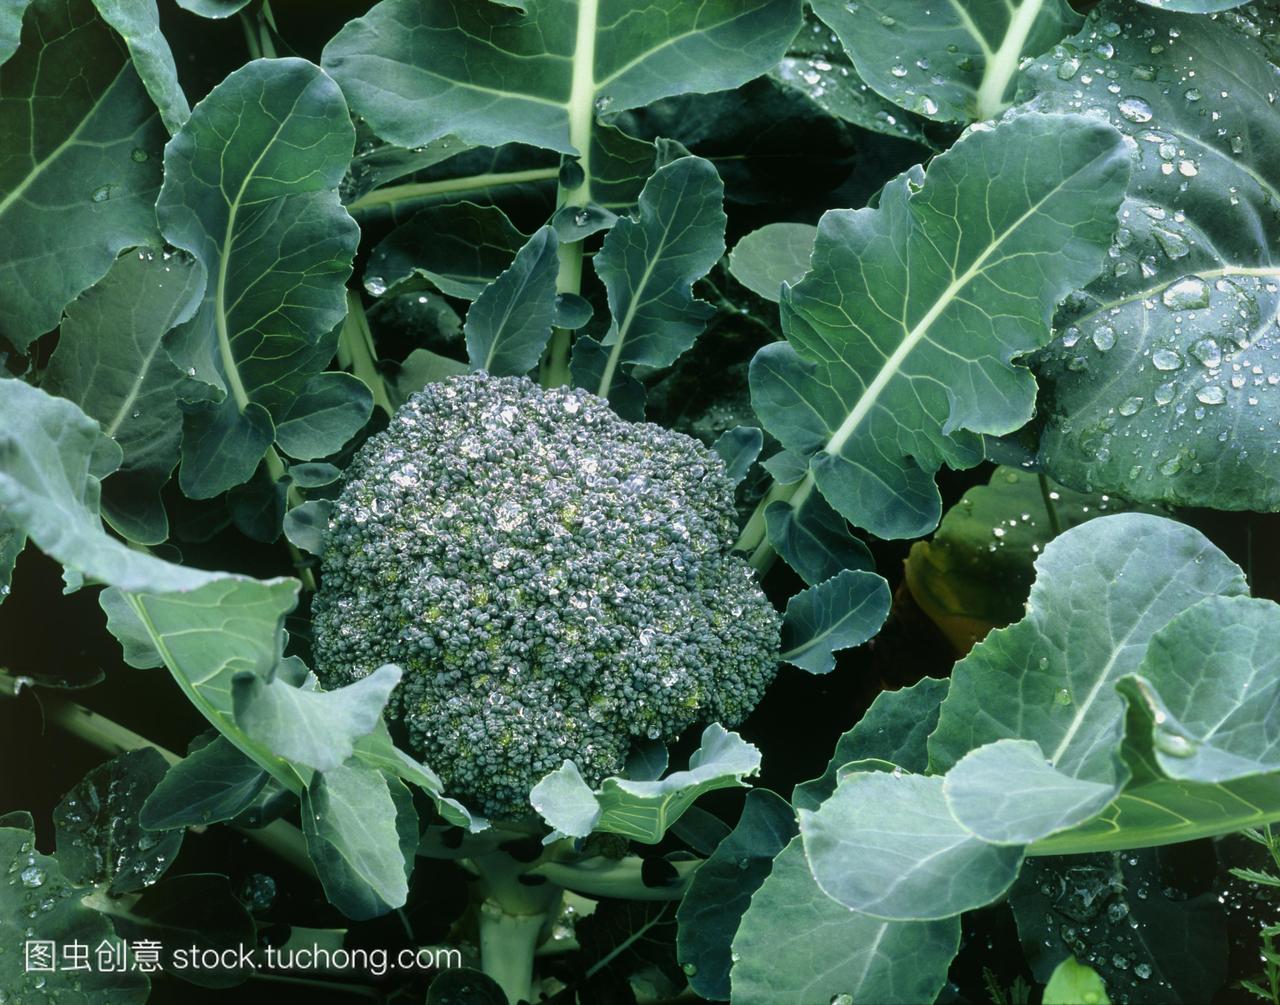 花椰菜。一种有机种植的西兰花植物,甘蓝菜。